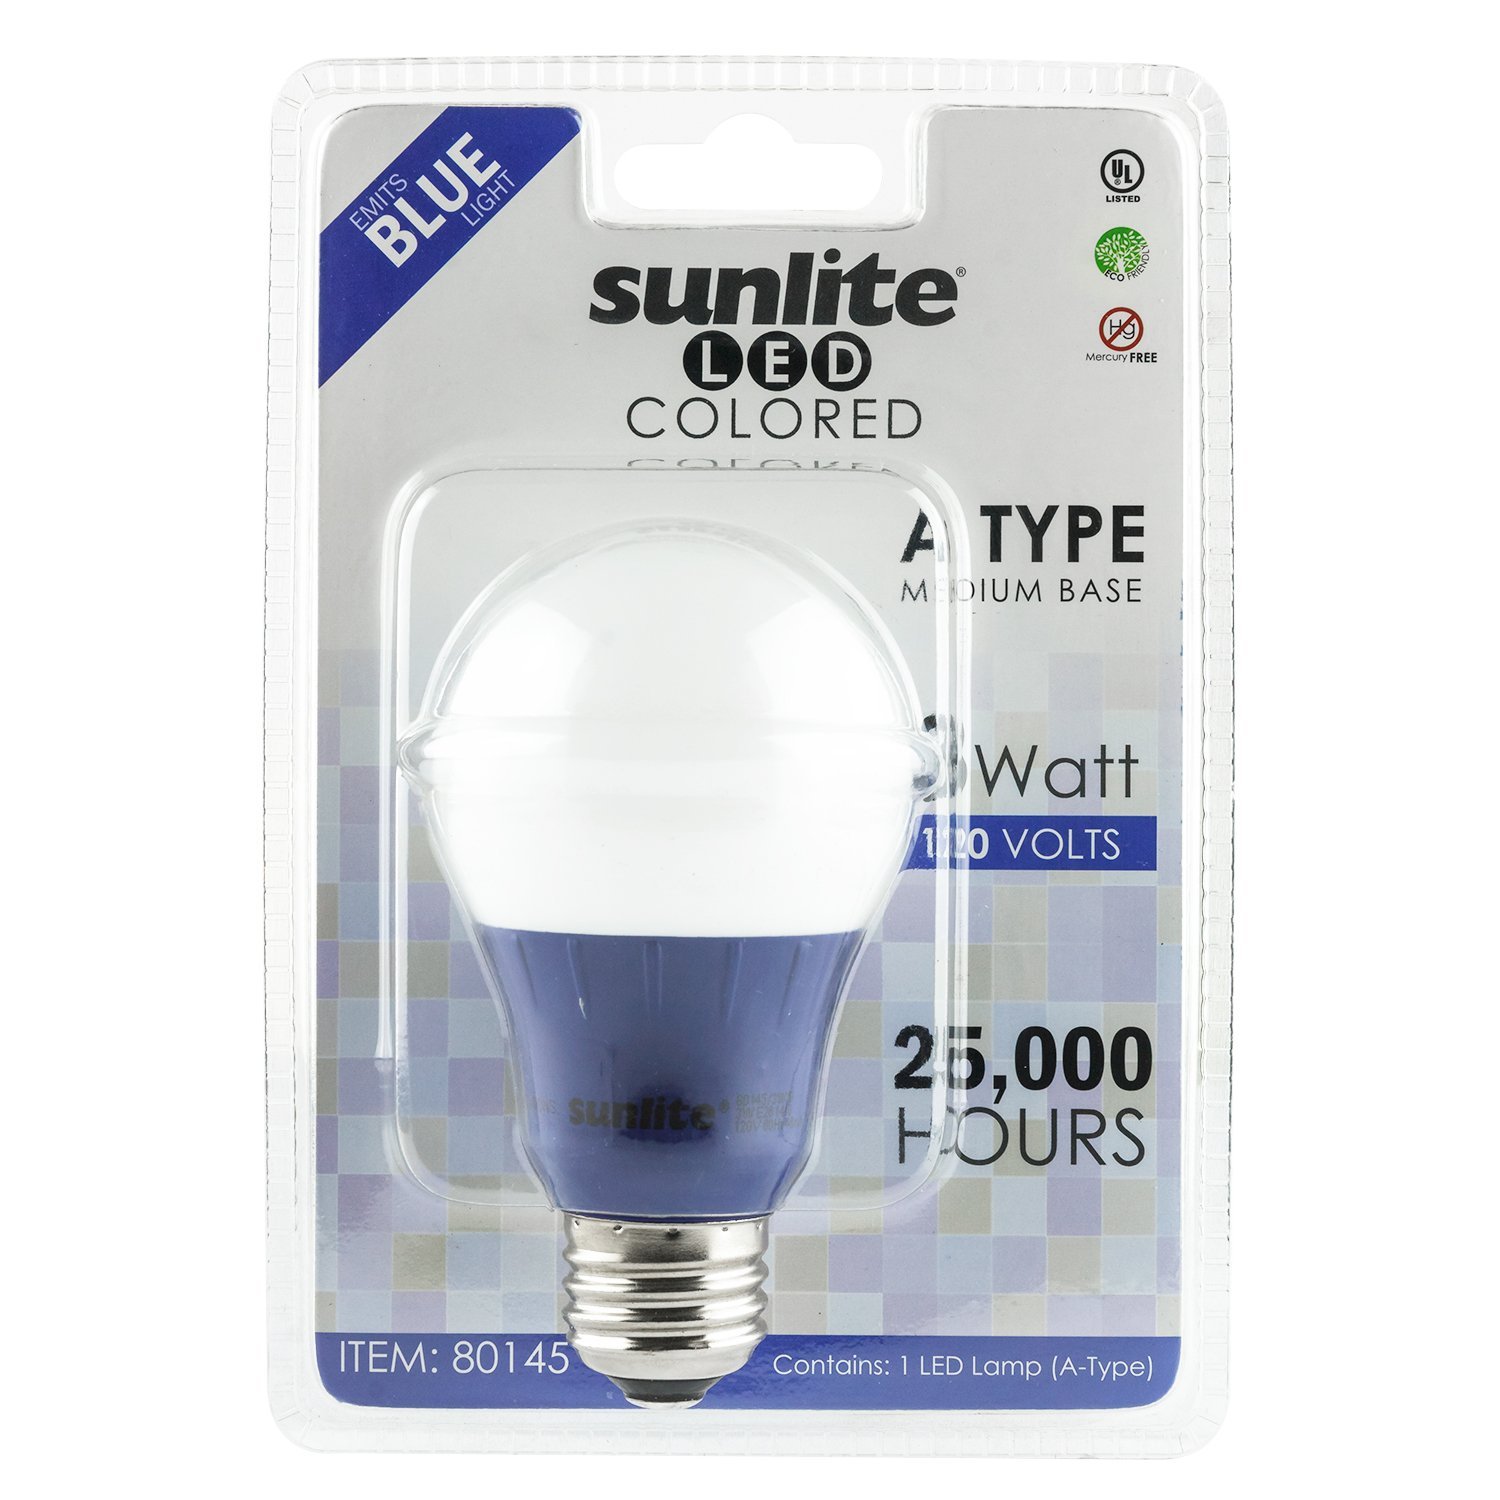 Blue LED Light Bulb in package